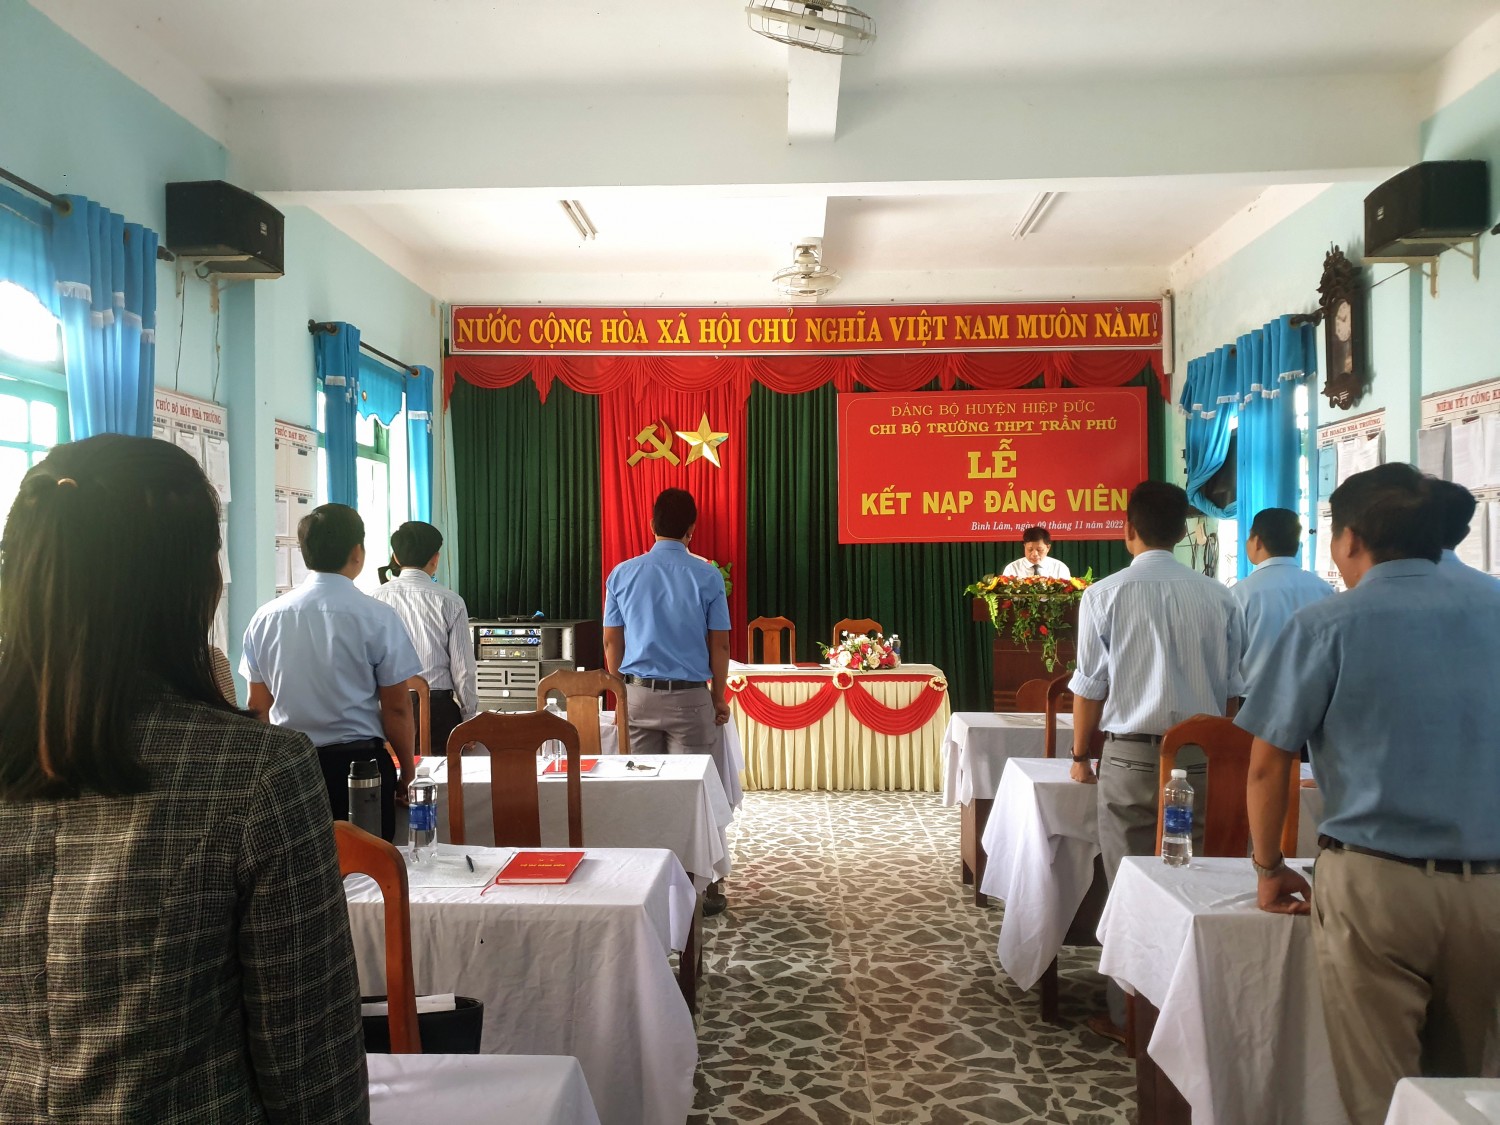 Chi bộ trường THPT Trần Phú trang trọng tổ chức lễ kết nạp Đảng viên cho các quần chúng ưu tú